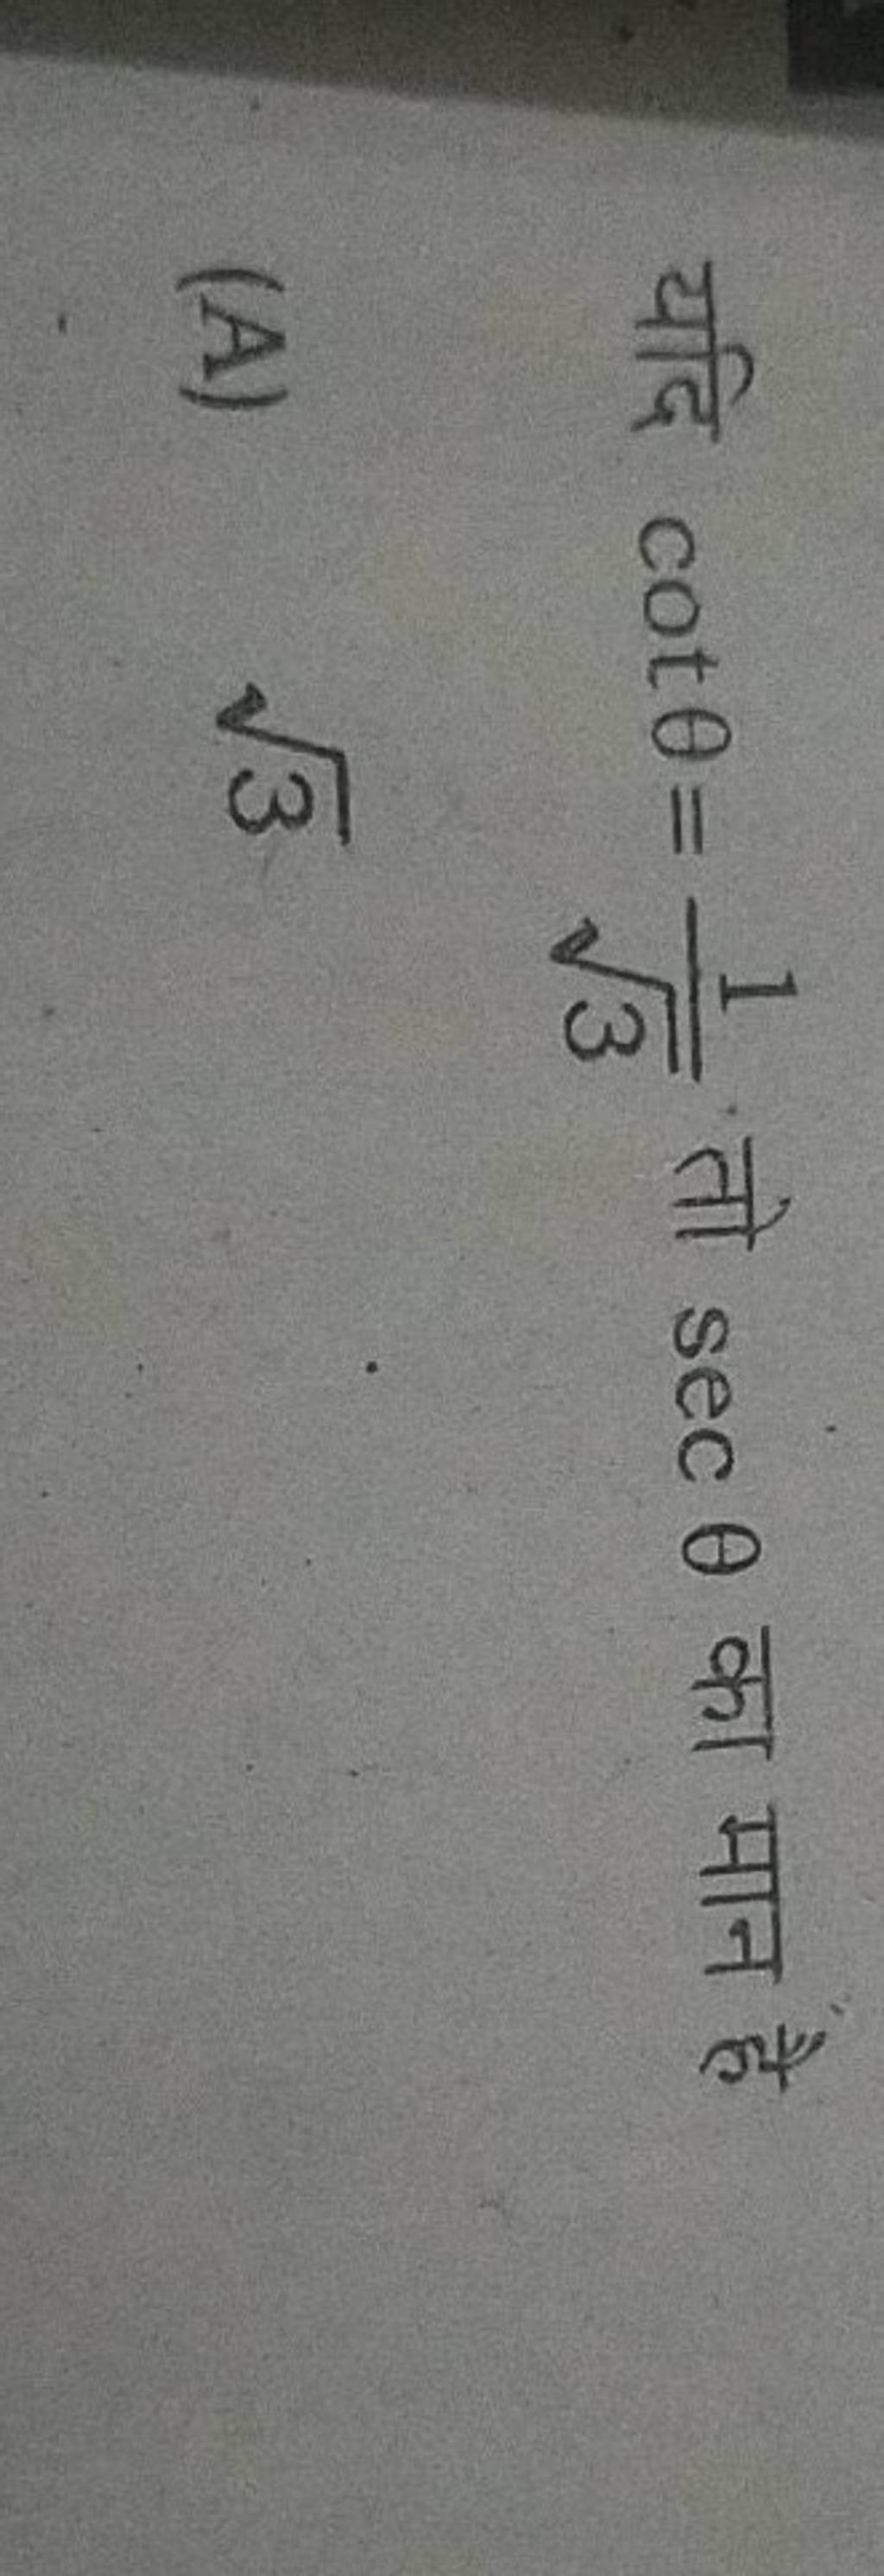 यदि cotθ=3​1​ तो secθ का मान है
(A) 3​